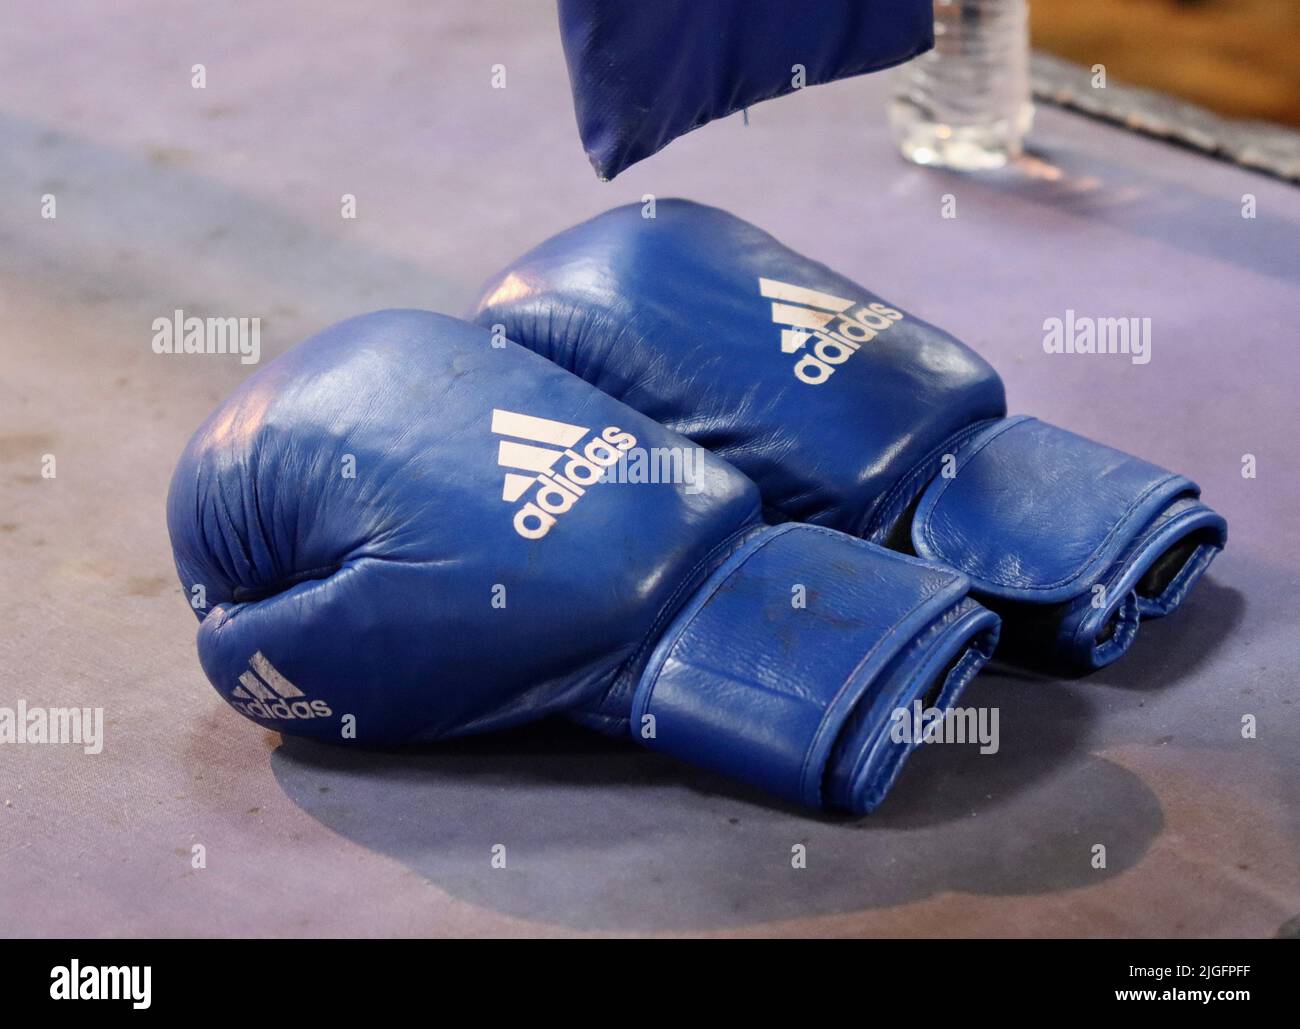 Un primer plano de un par de guantes de boxeo Adidas azules en una pista  Fotografía de stock - Alamy